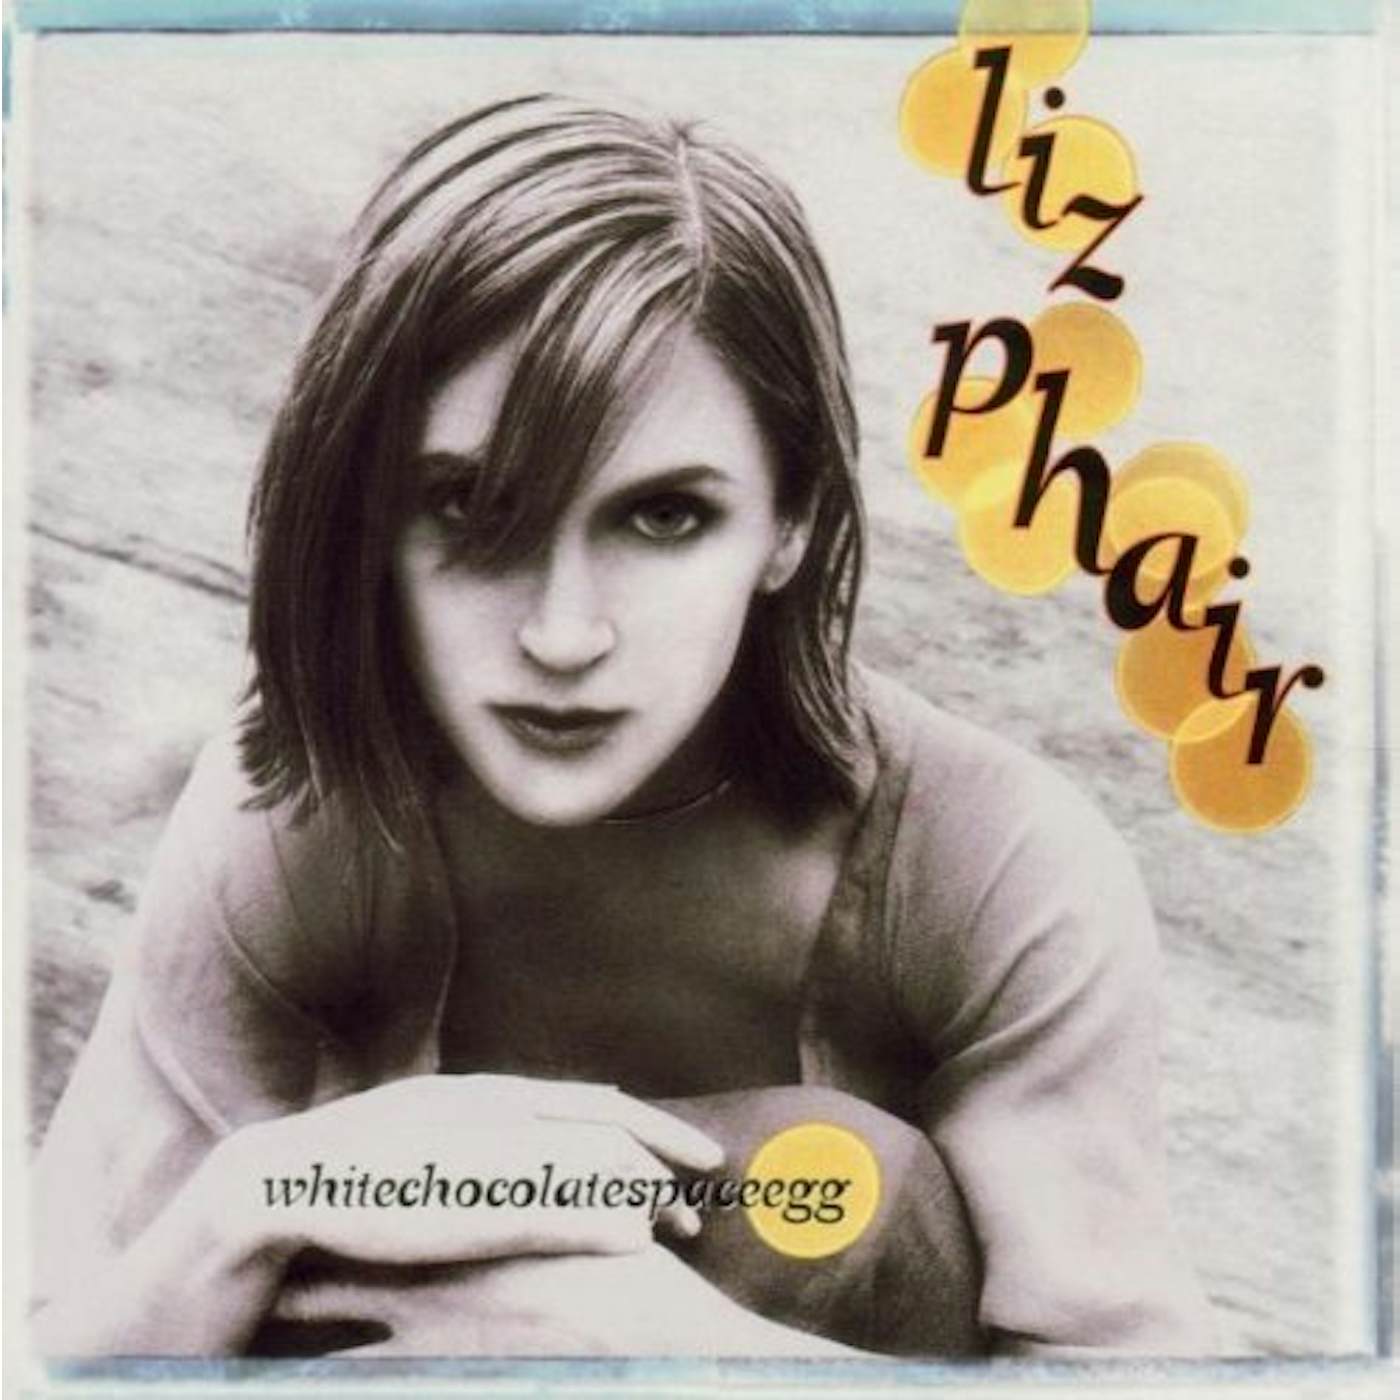 Liz Phair Whitechocolatespaceegg Vinyl Record